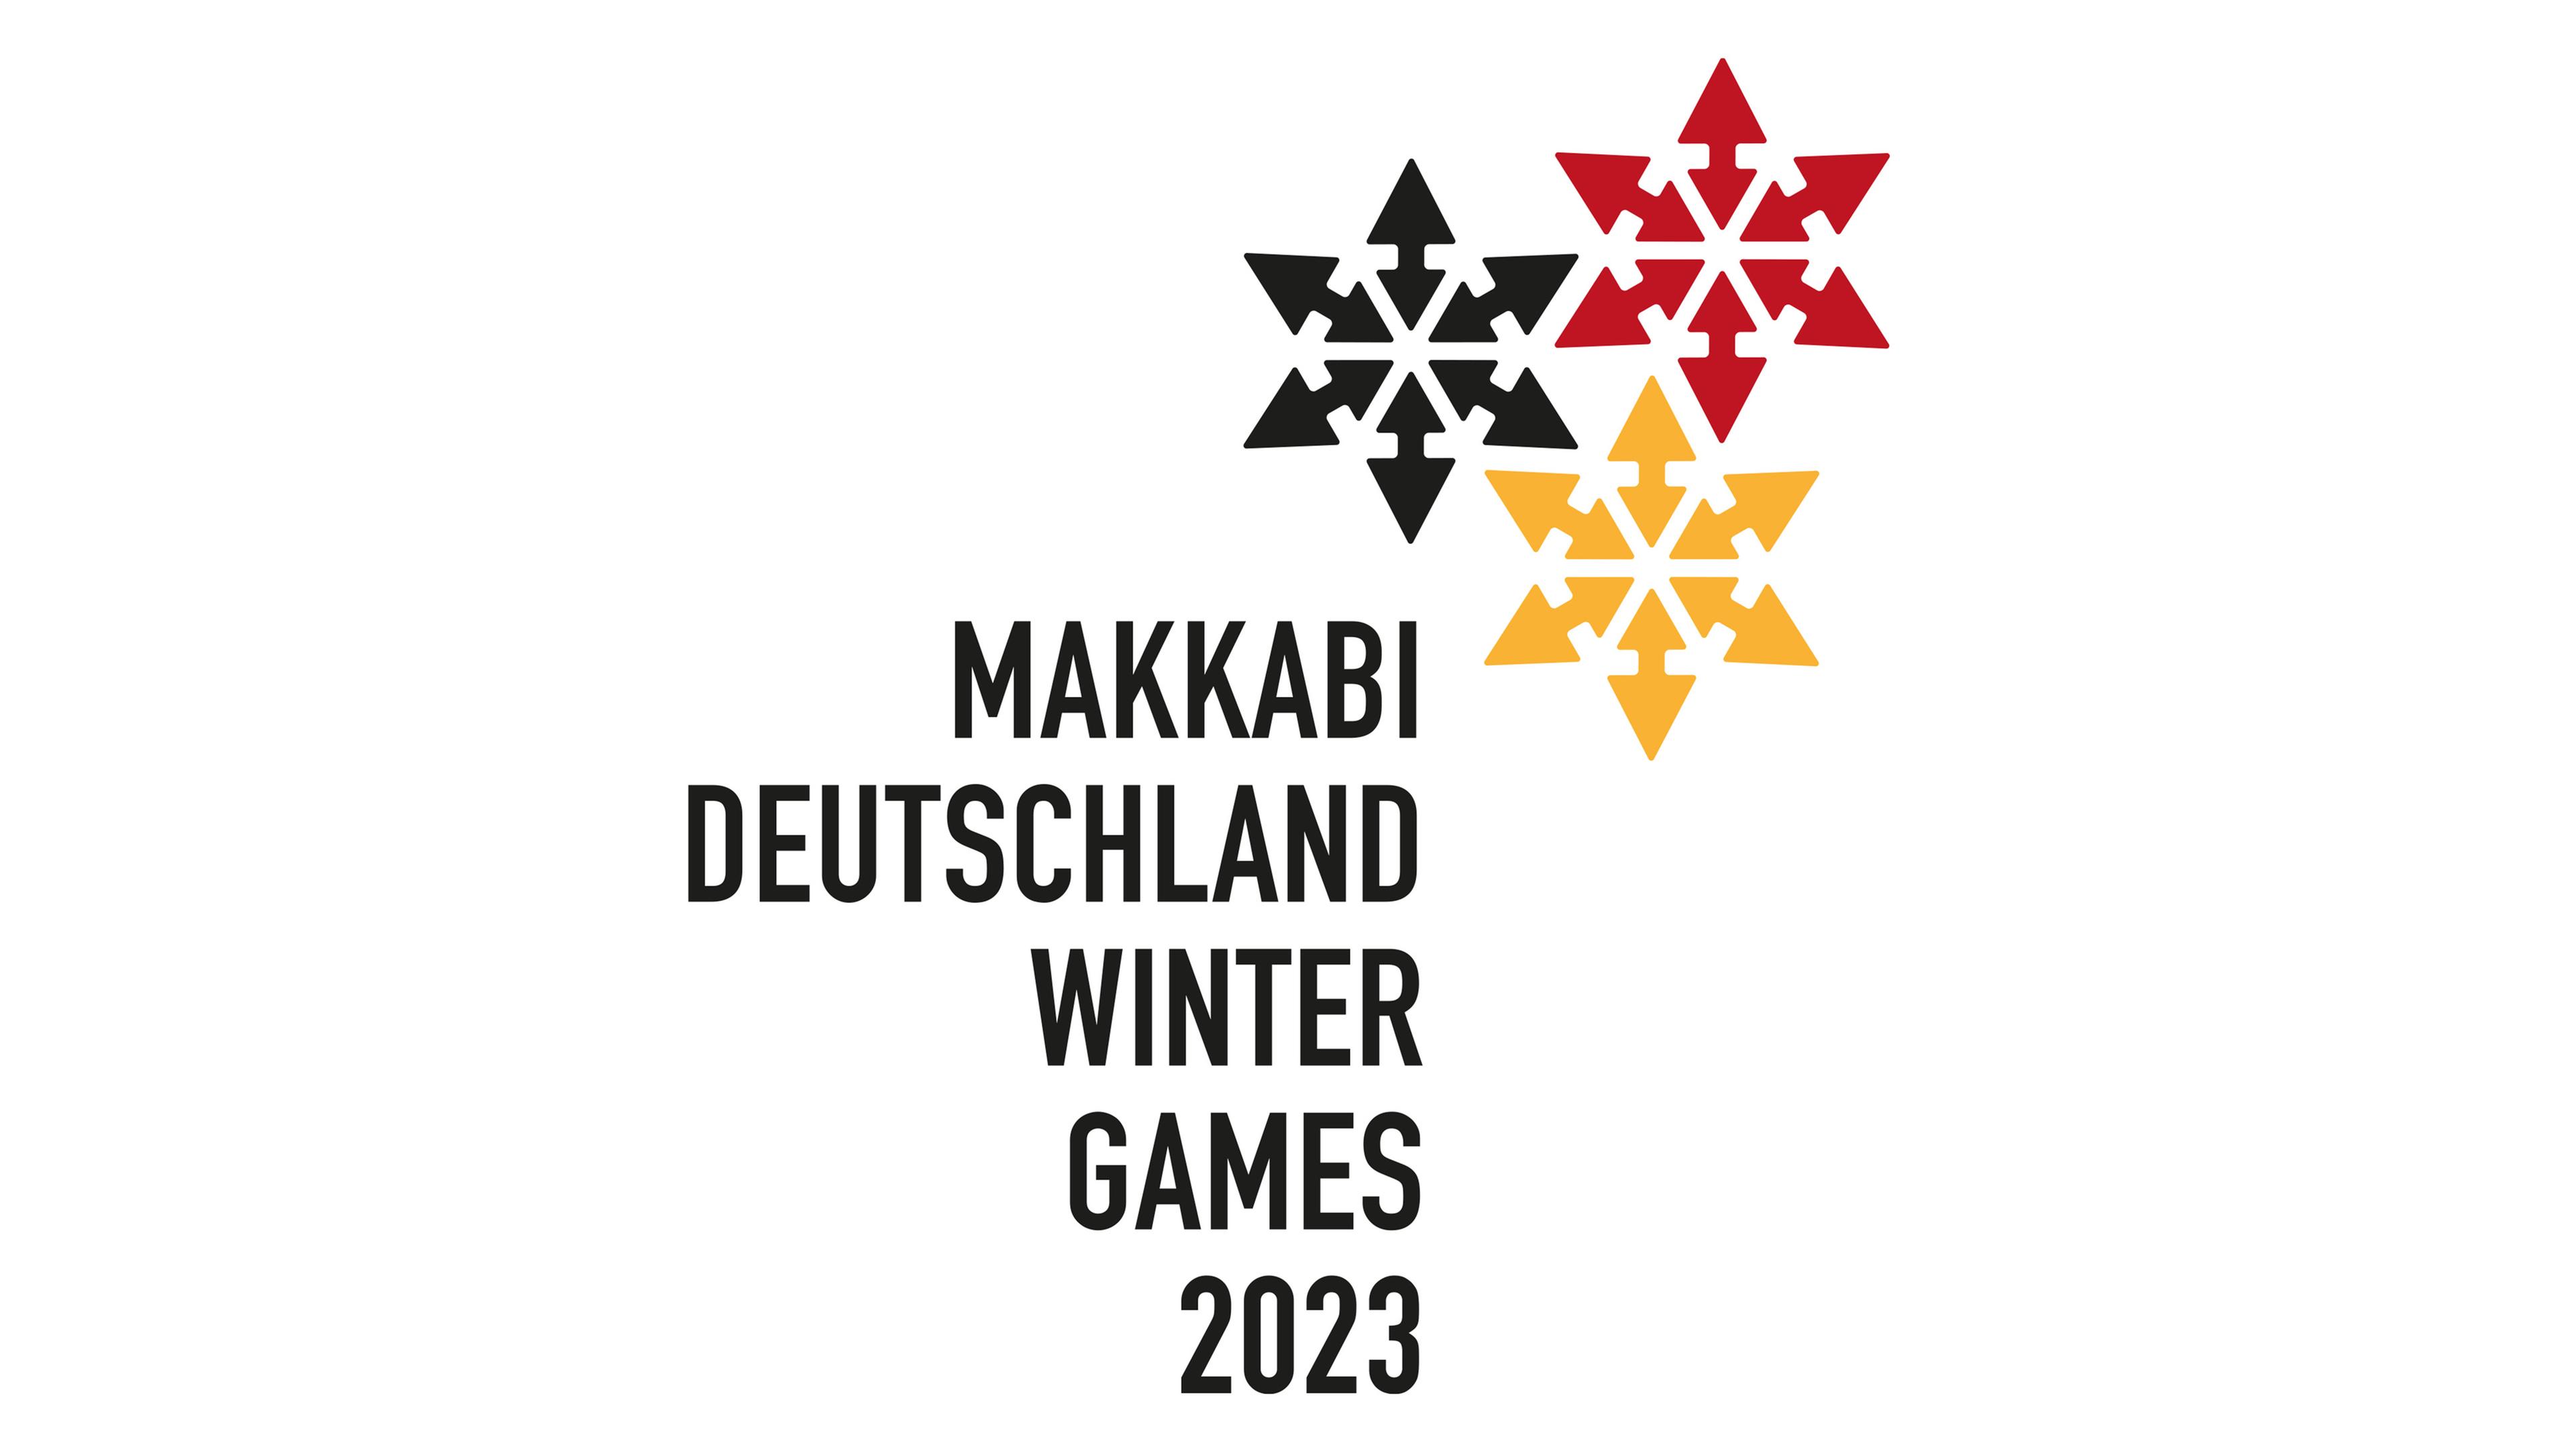 Makkabi Deutschland Winter Games 2023, Logo